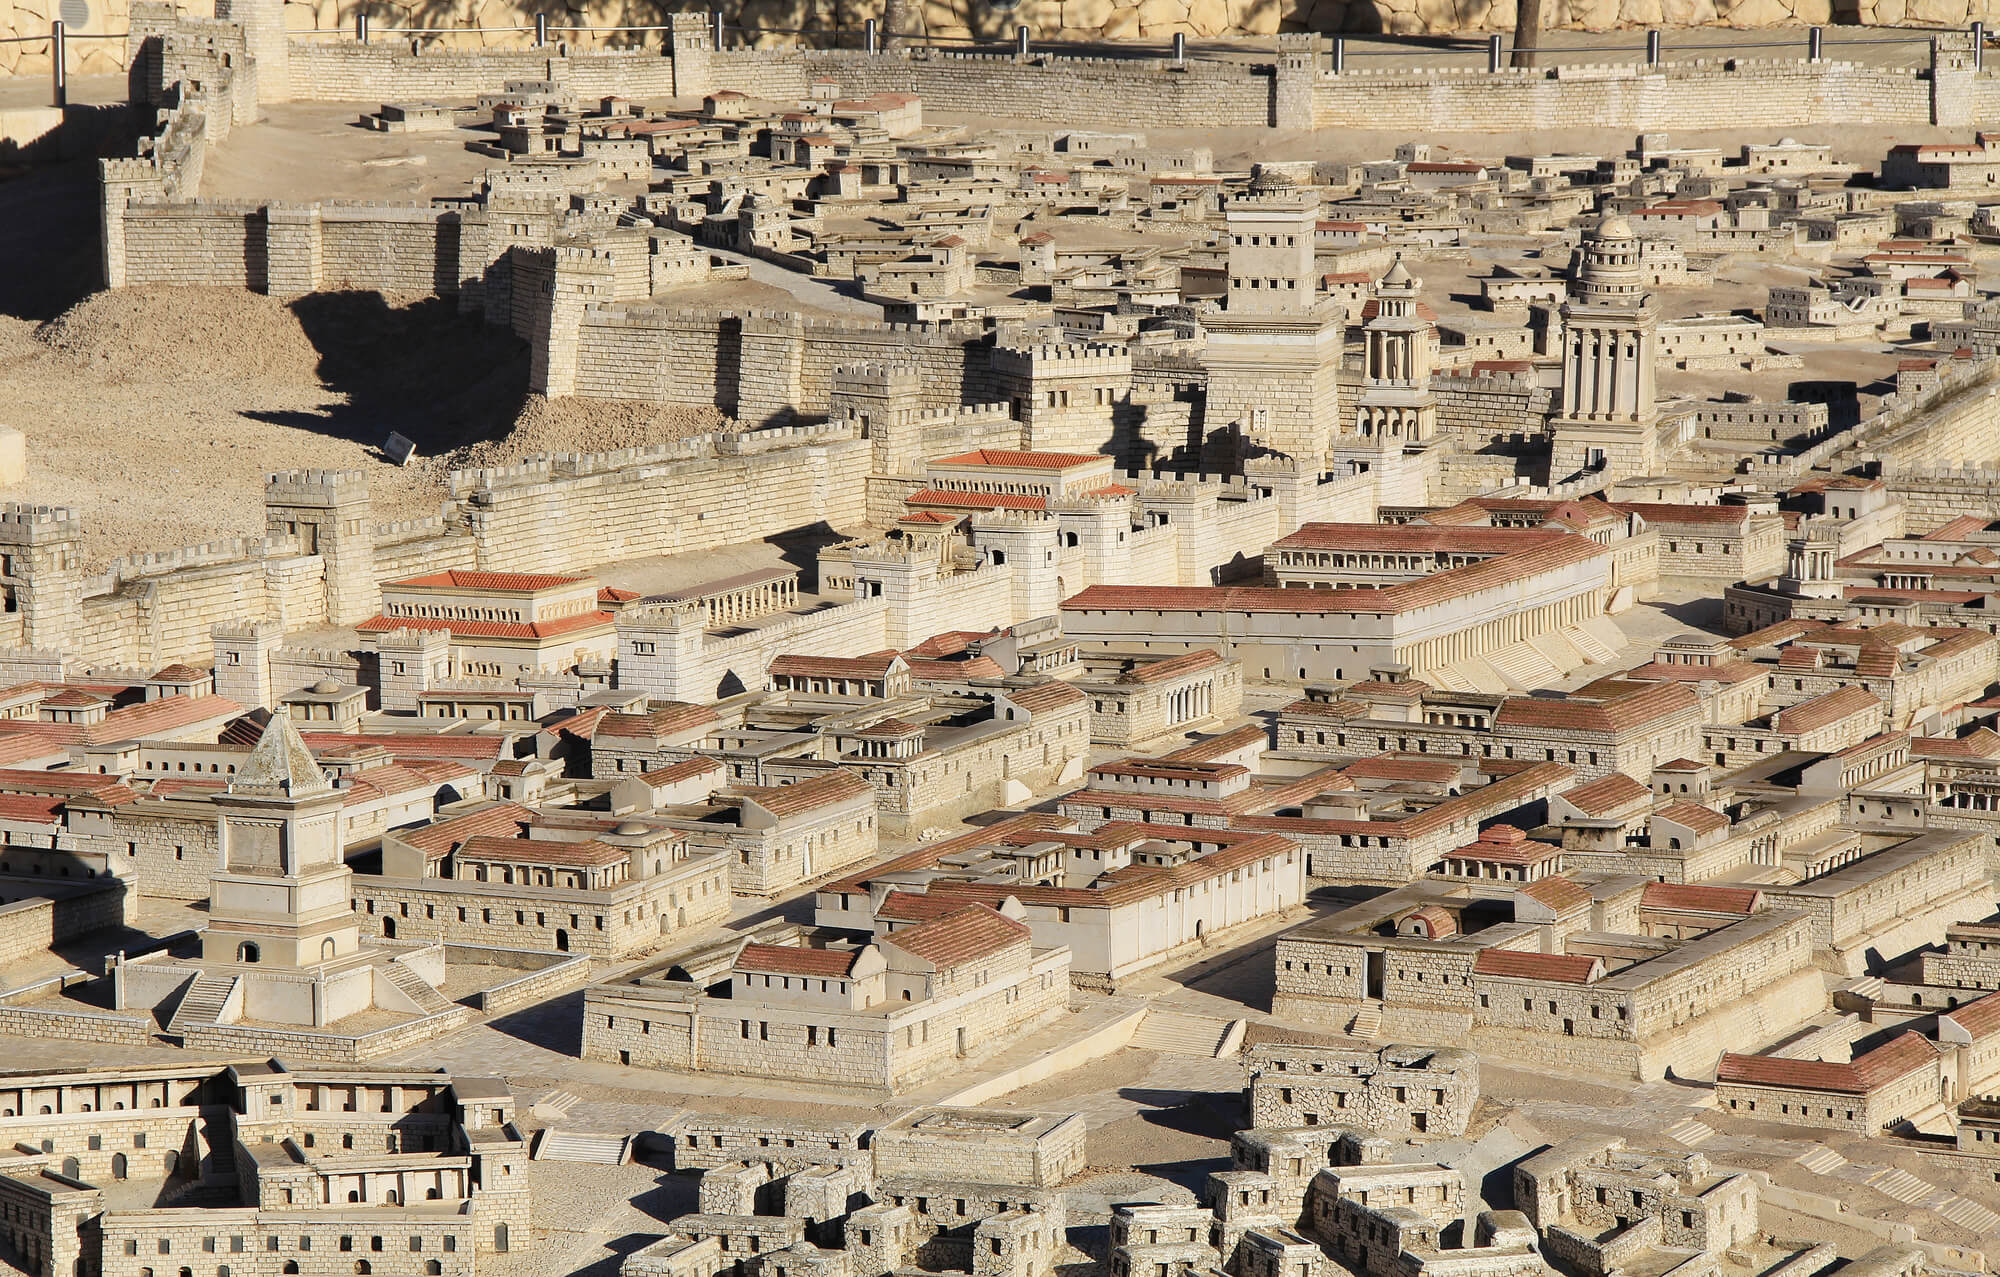 نموذج لمدينة القدس من فترة الهيكل الثاني في متحف إسرائيل (في هوليلاند سابقاً) – في الوسط – معبد هيرودس. الصورة: موقع Depositphotos.com